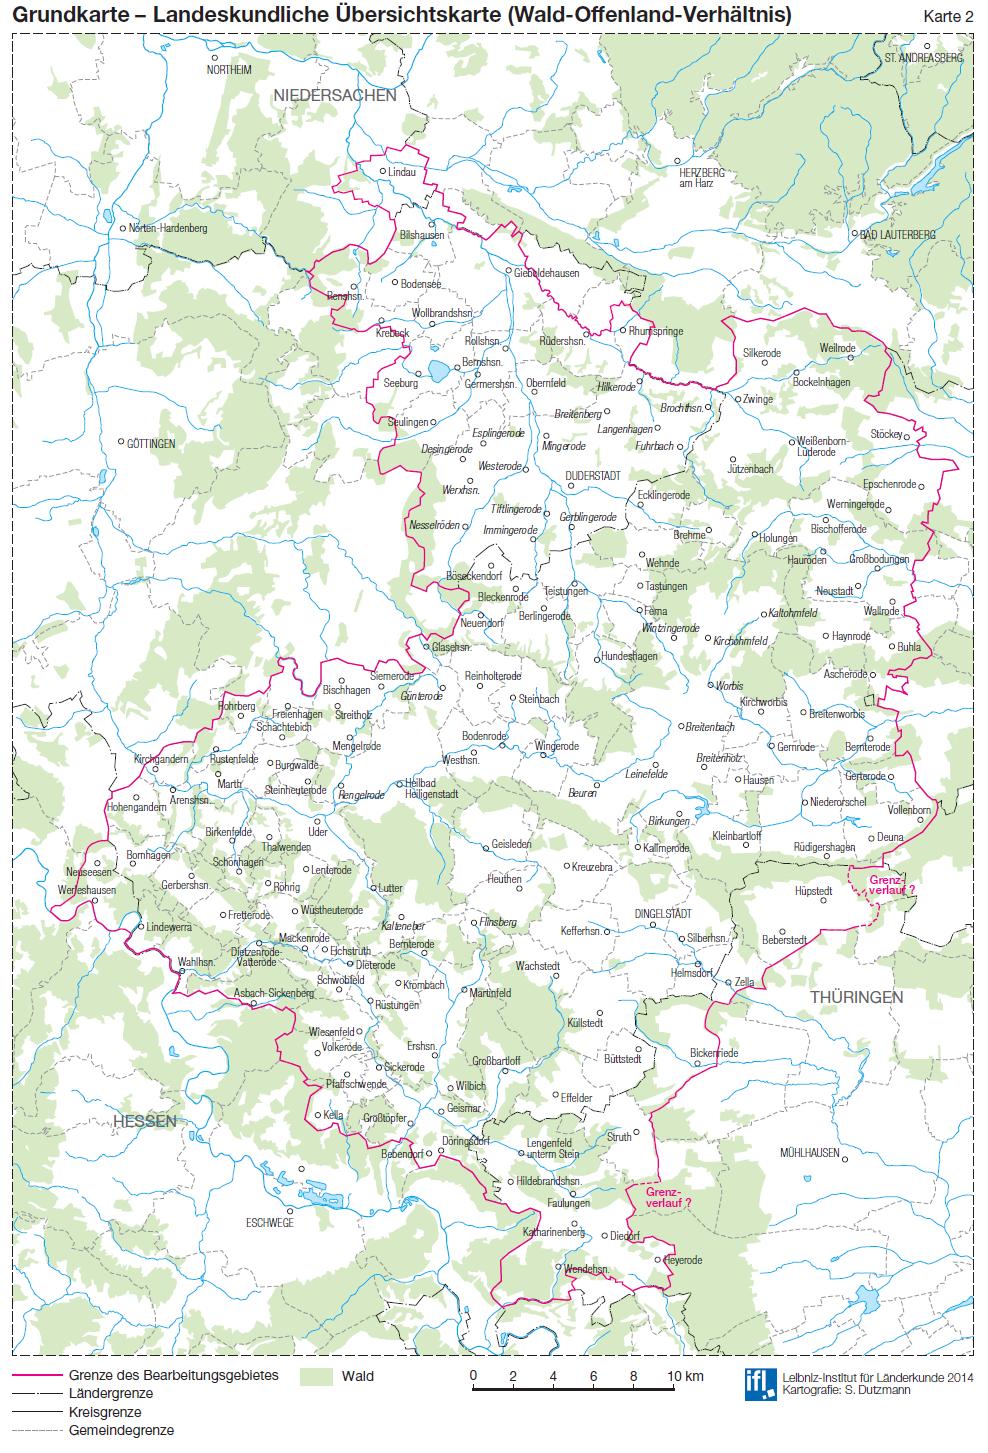 Waldeigentumsverhältnisse Wald im niedersächsischen Eichsfeld 2.455 ha, davon - Staatswald (Land): 460 ha - Privatwald: ca. 1.995 ha, davon 1.